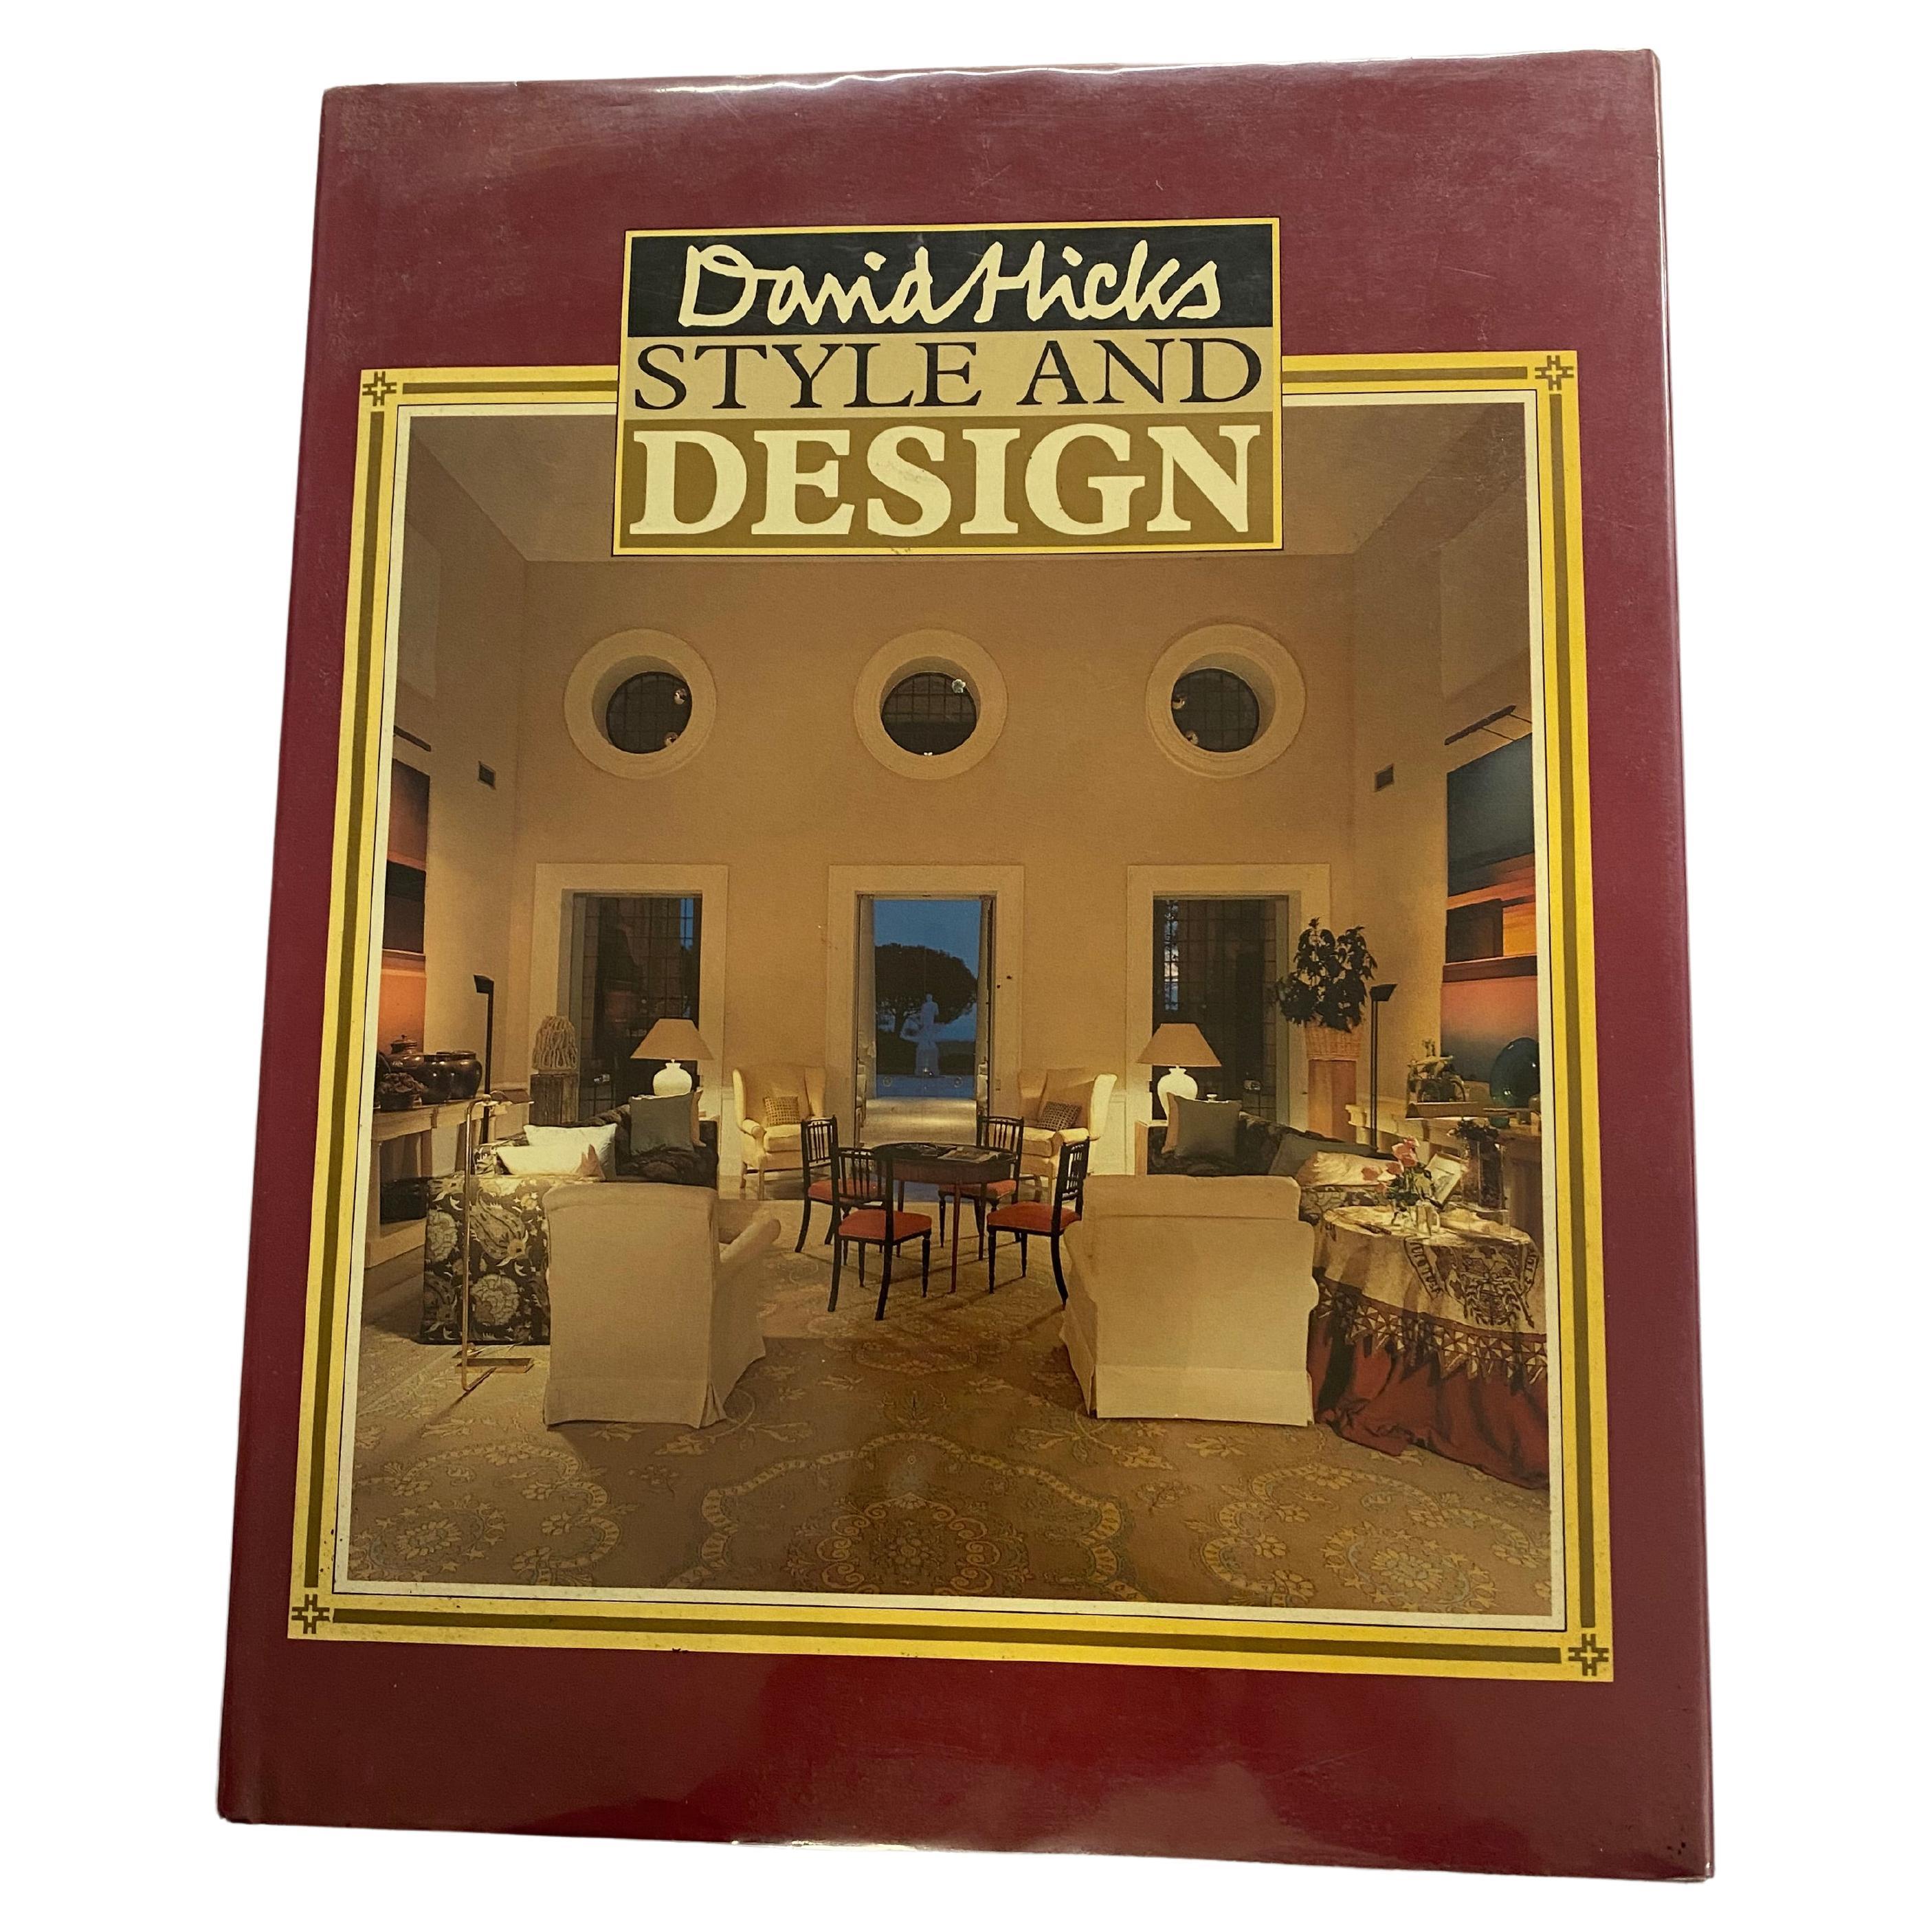 Stil und Design von David Hicks (Buch)